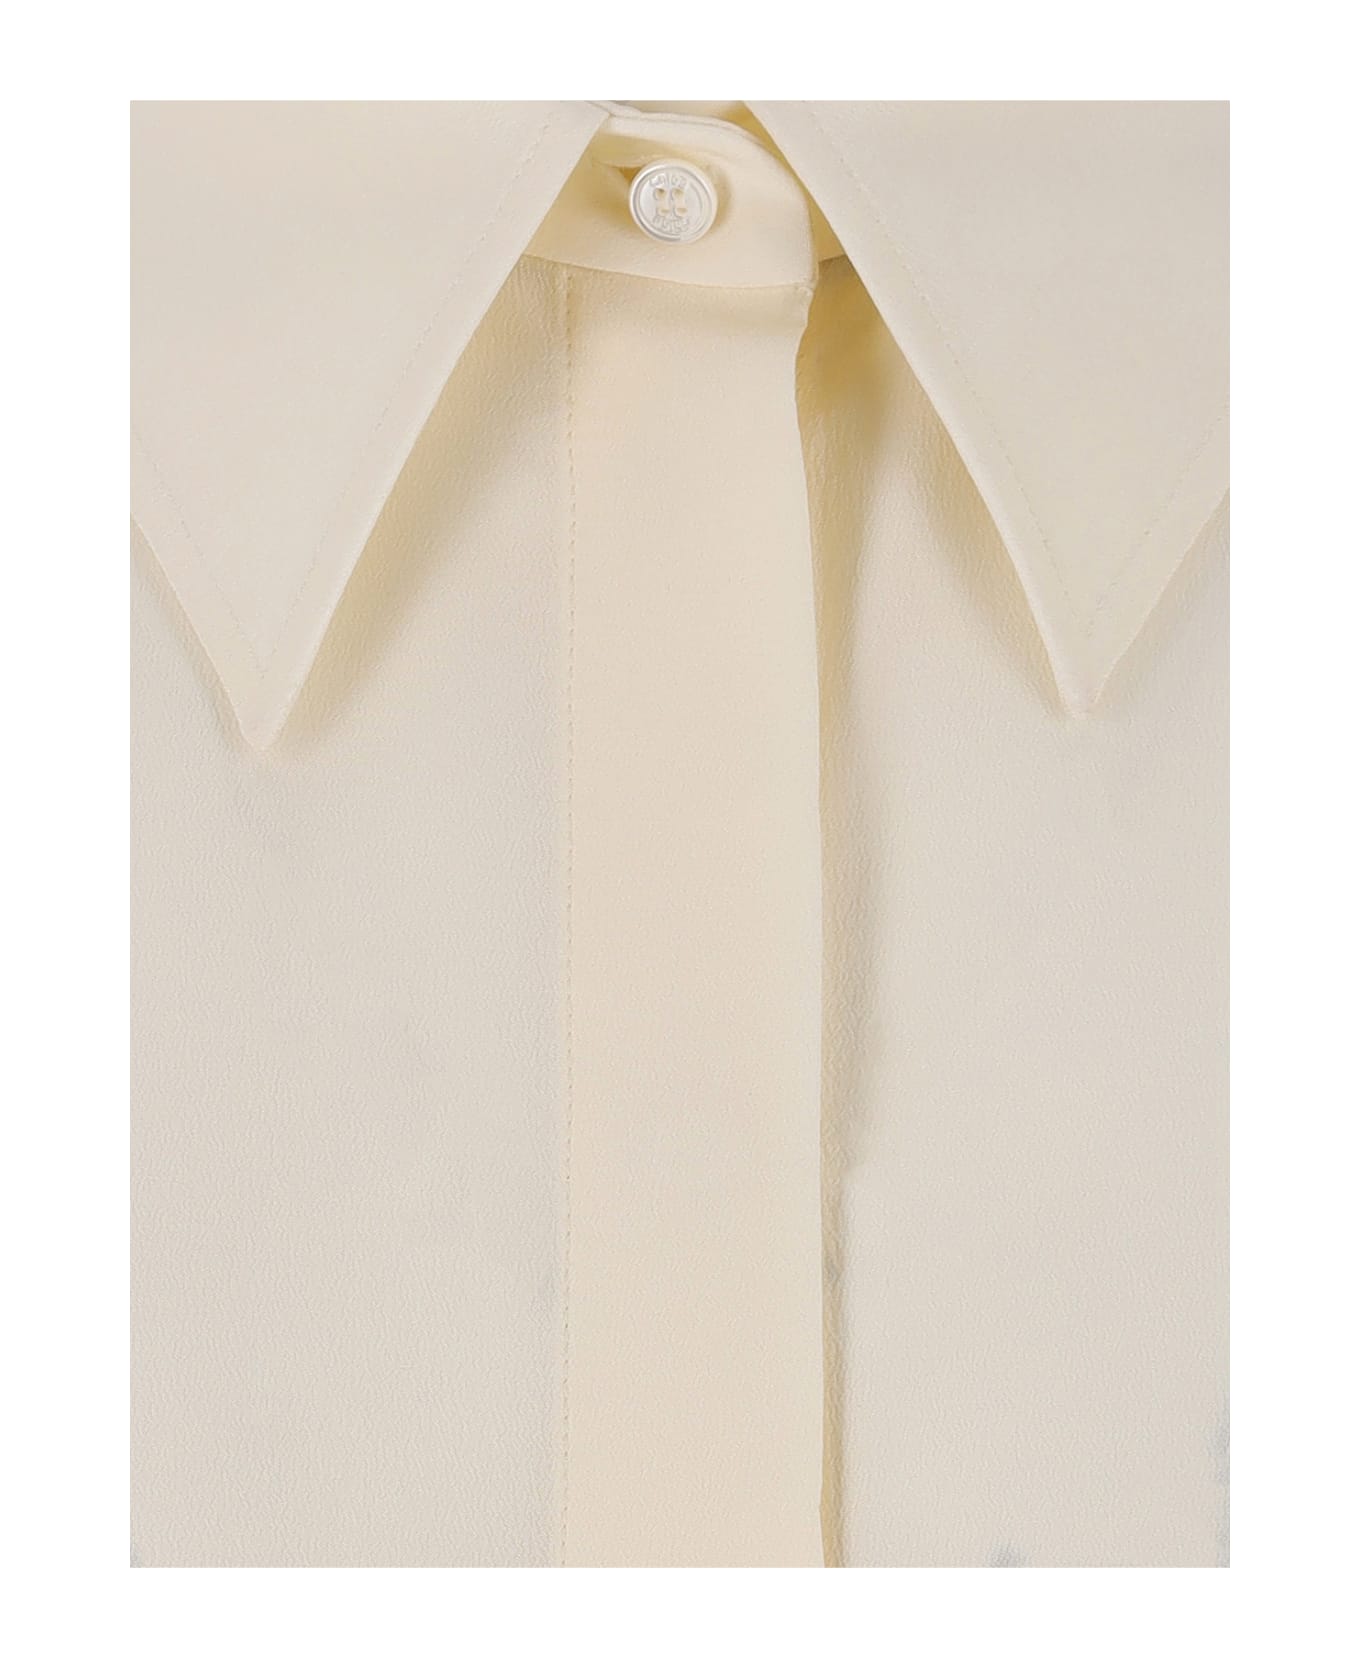 Chloé Ruffle Detail Shirt - Cream ブラウス